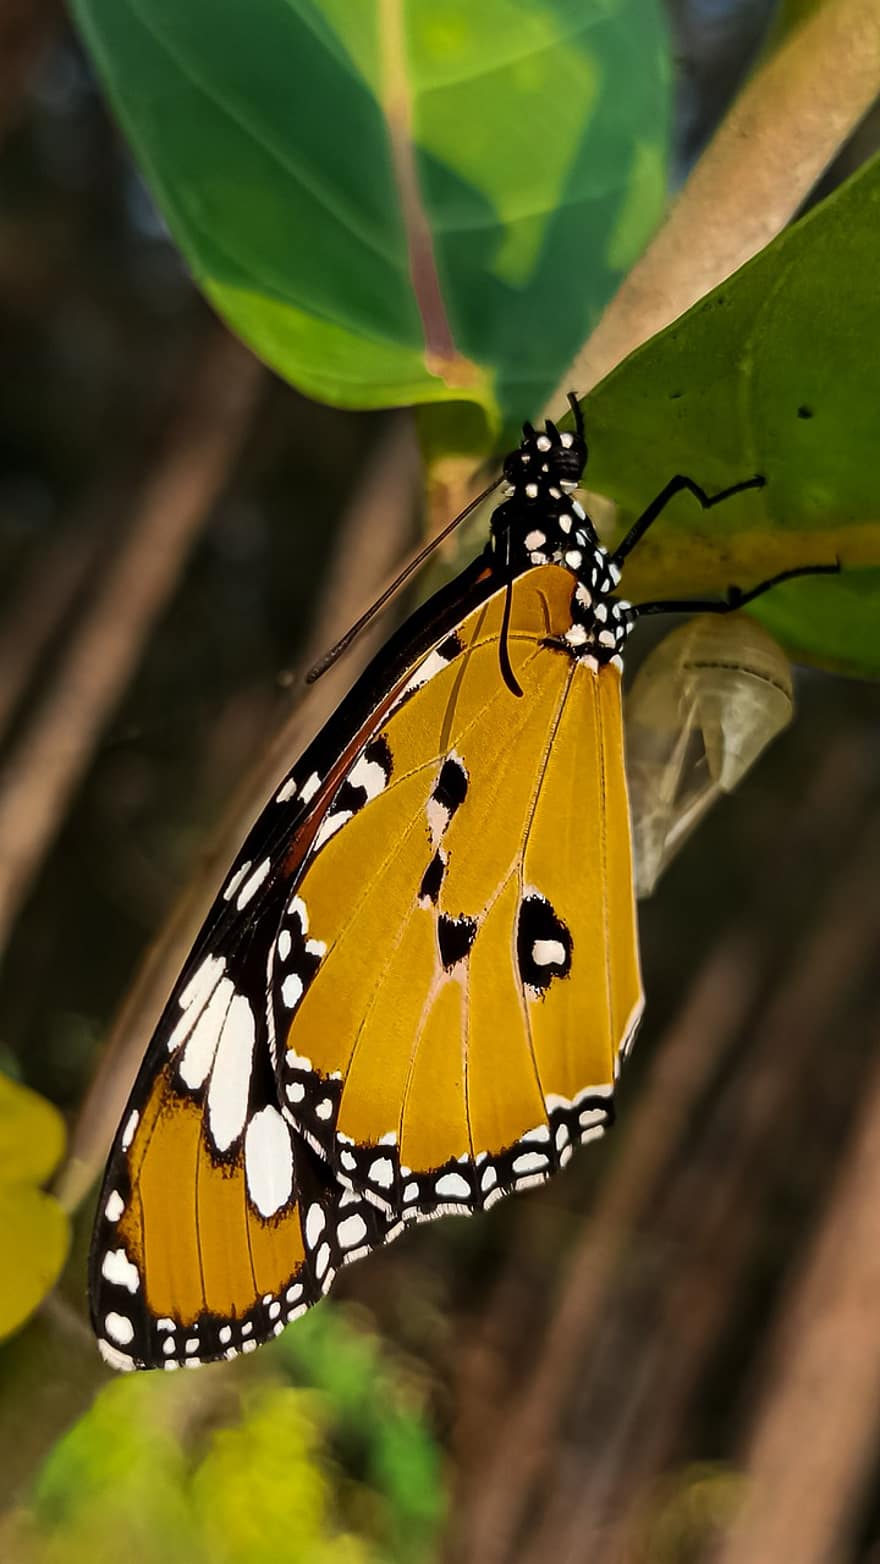 farfalla, insetto, insetto alato, ali di farfalla, fauna, natura, avvicinamento, multicolore, macro, colore verde, giallo